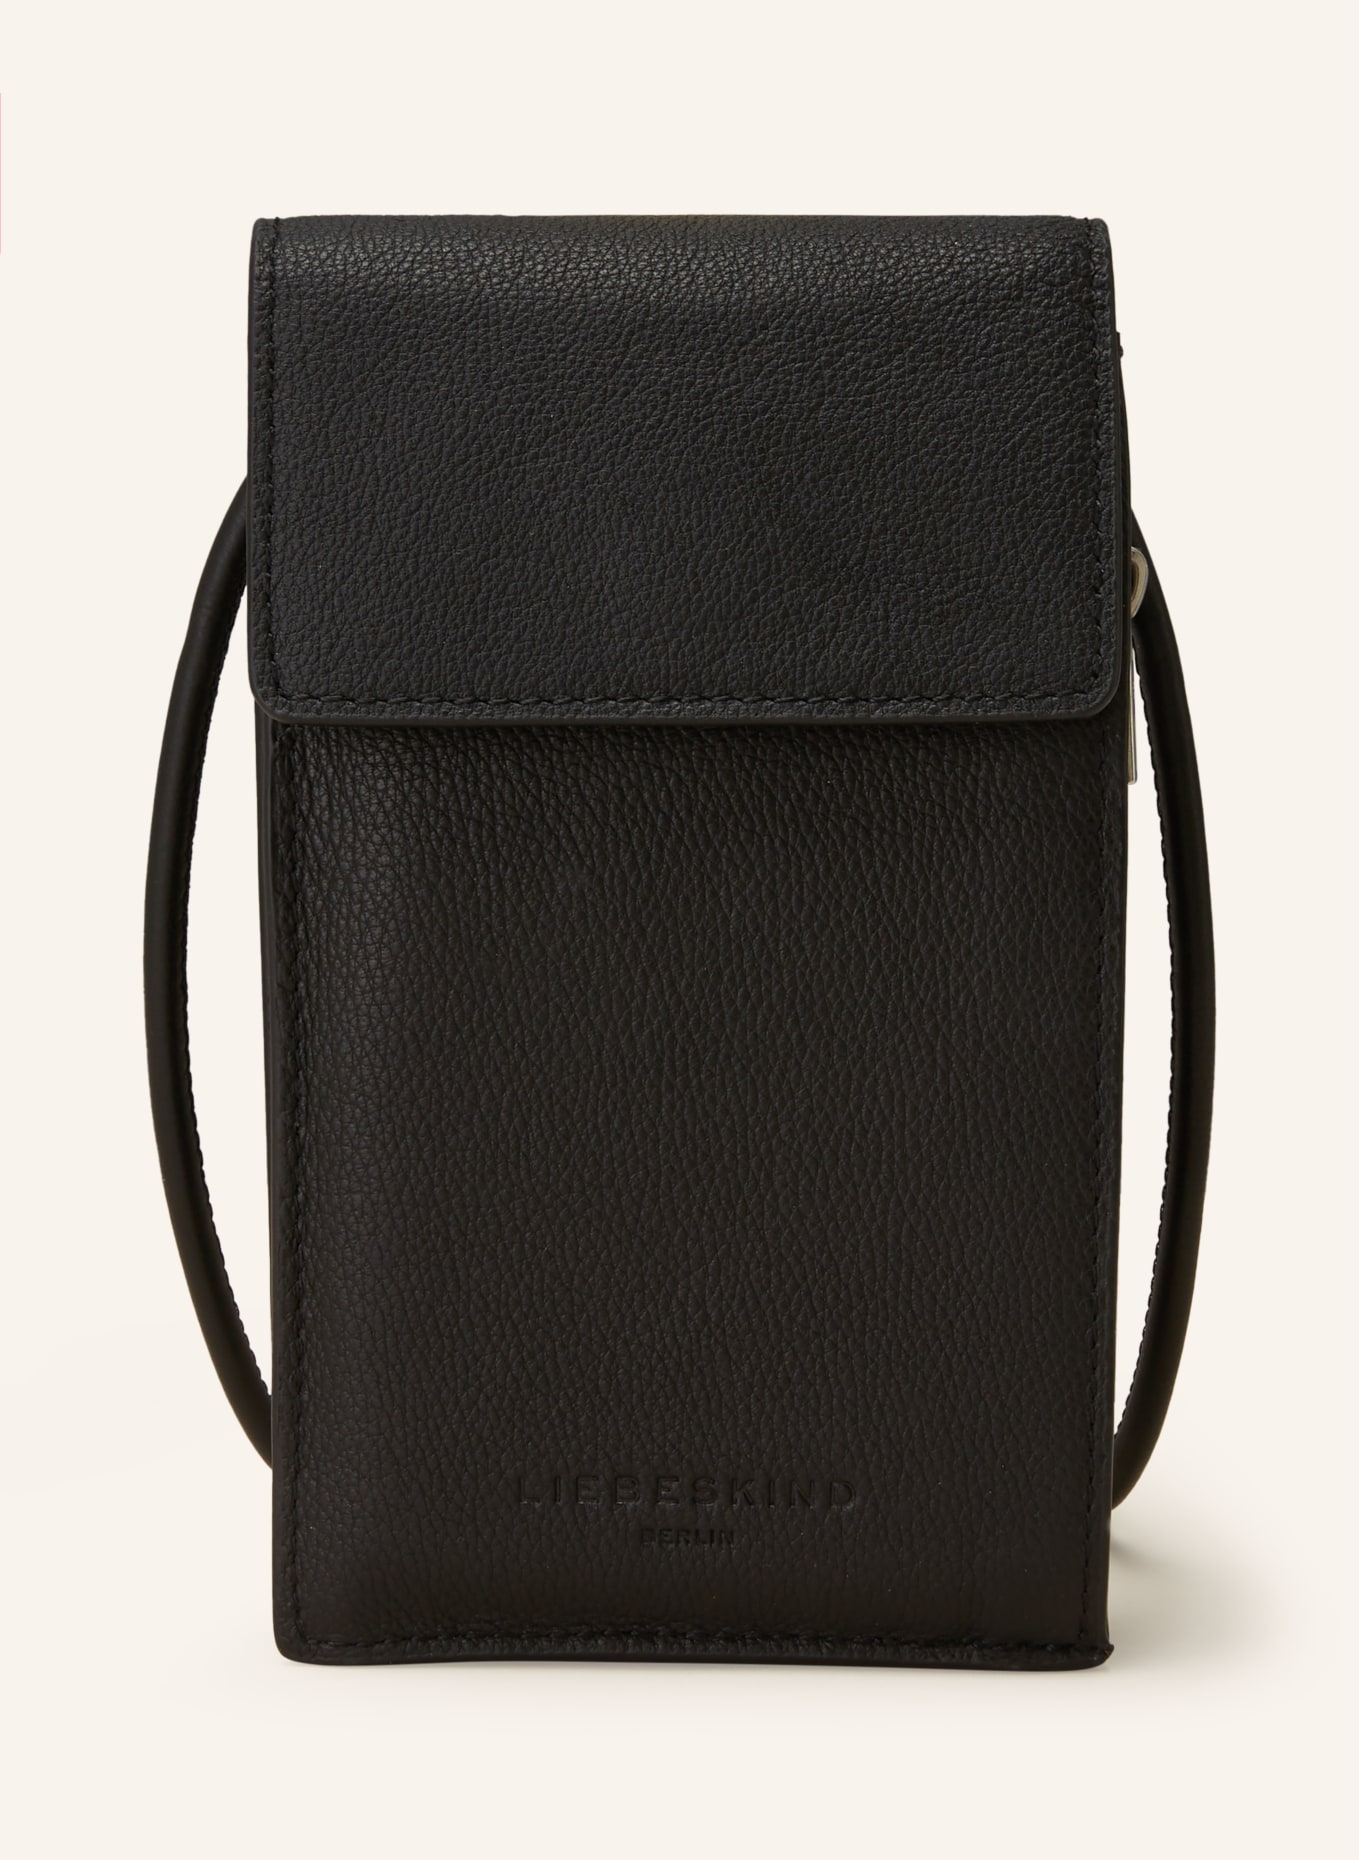 LIEBESKIND Smartphone bag HARRIS, Color: BLACK (Image 1)